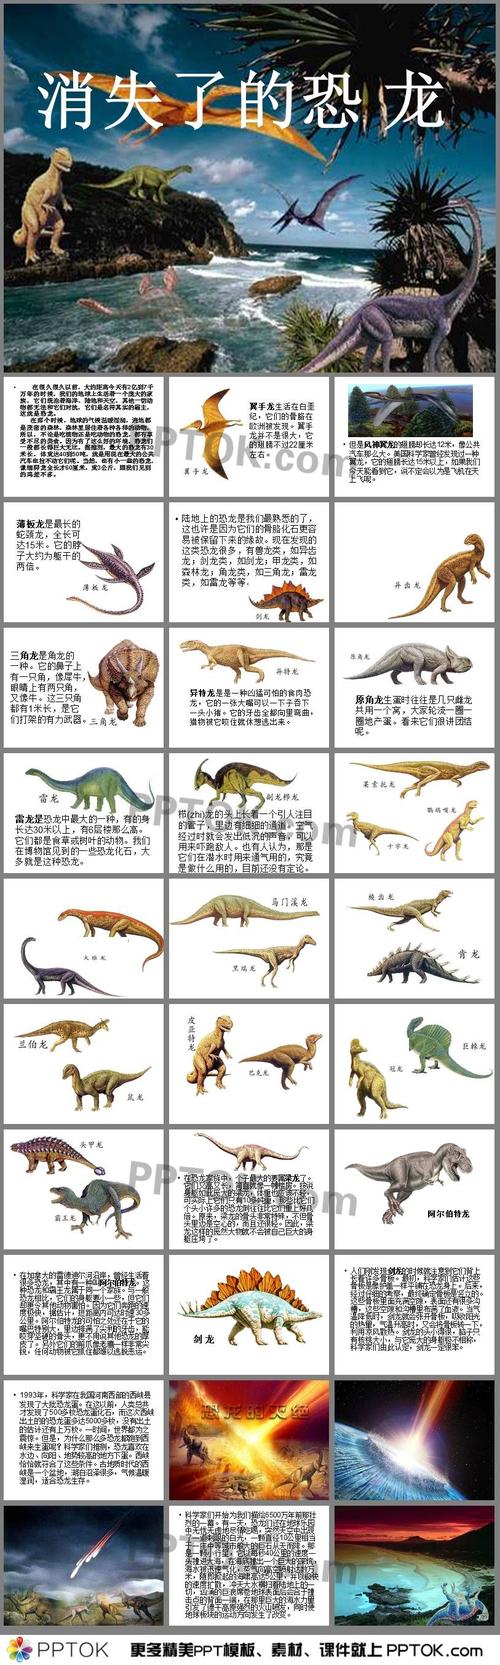 恐龙一共有多少个品种